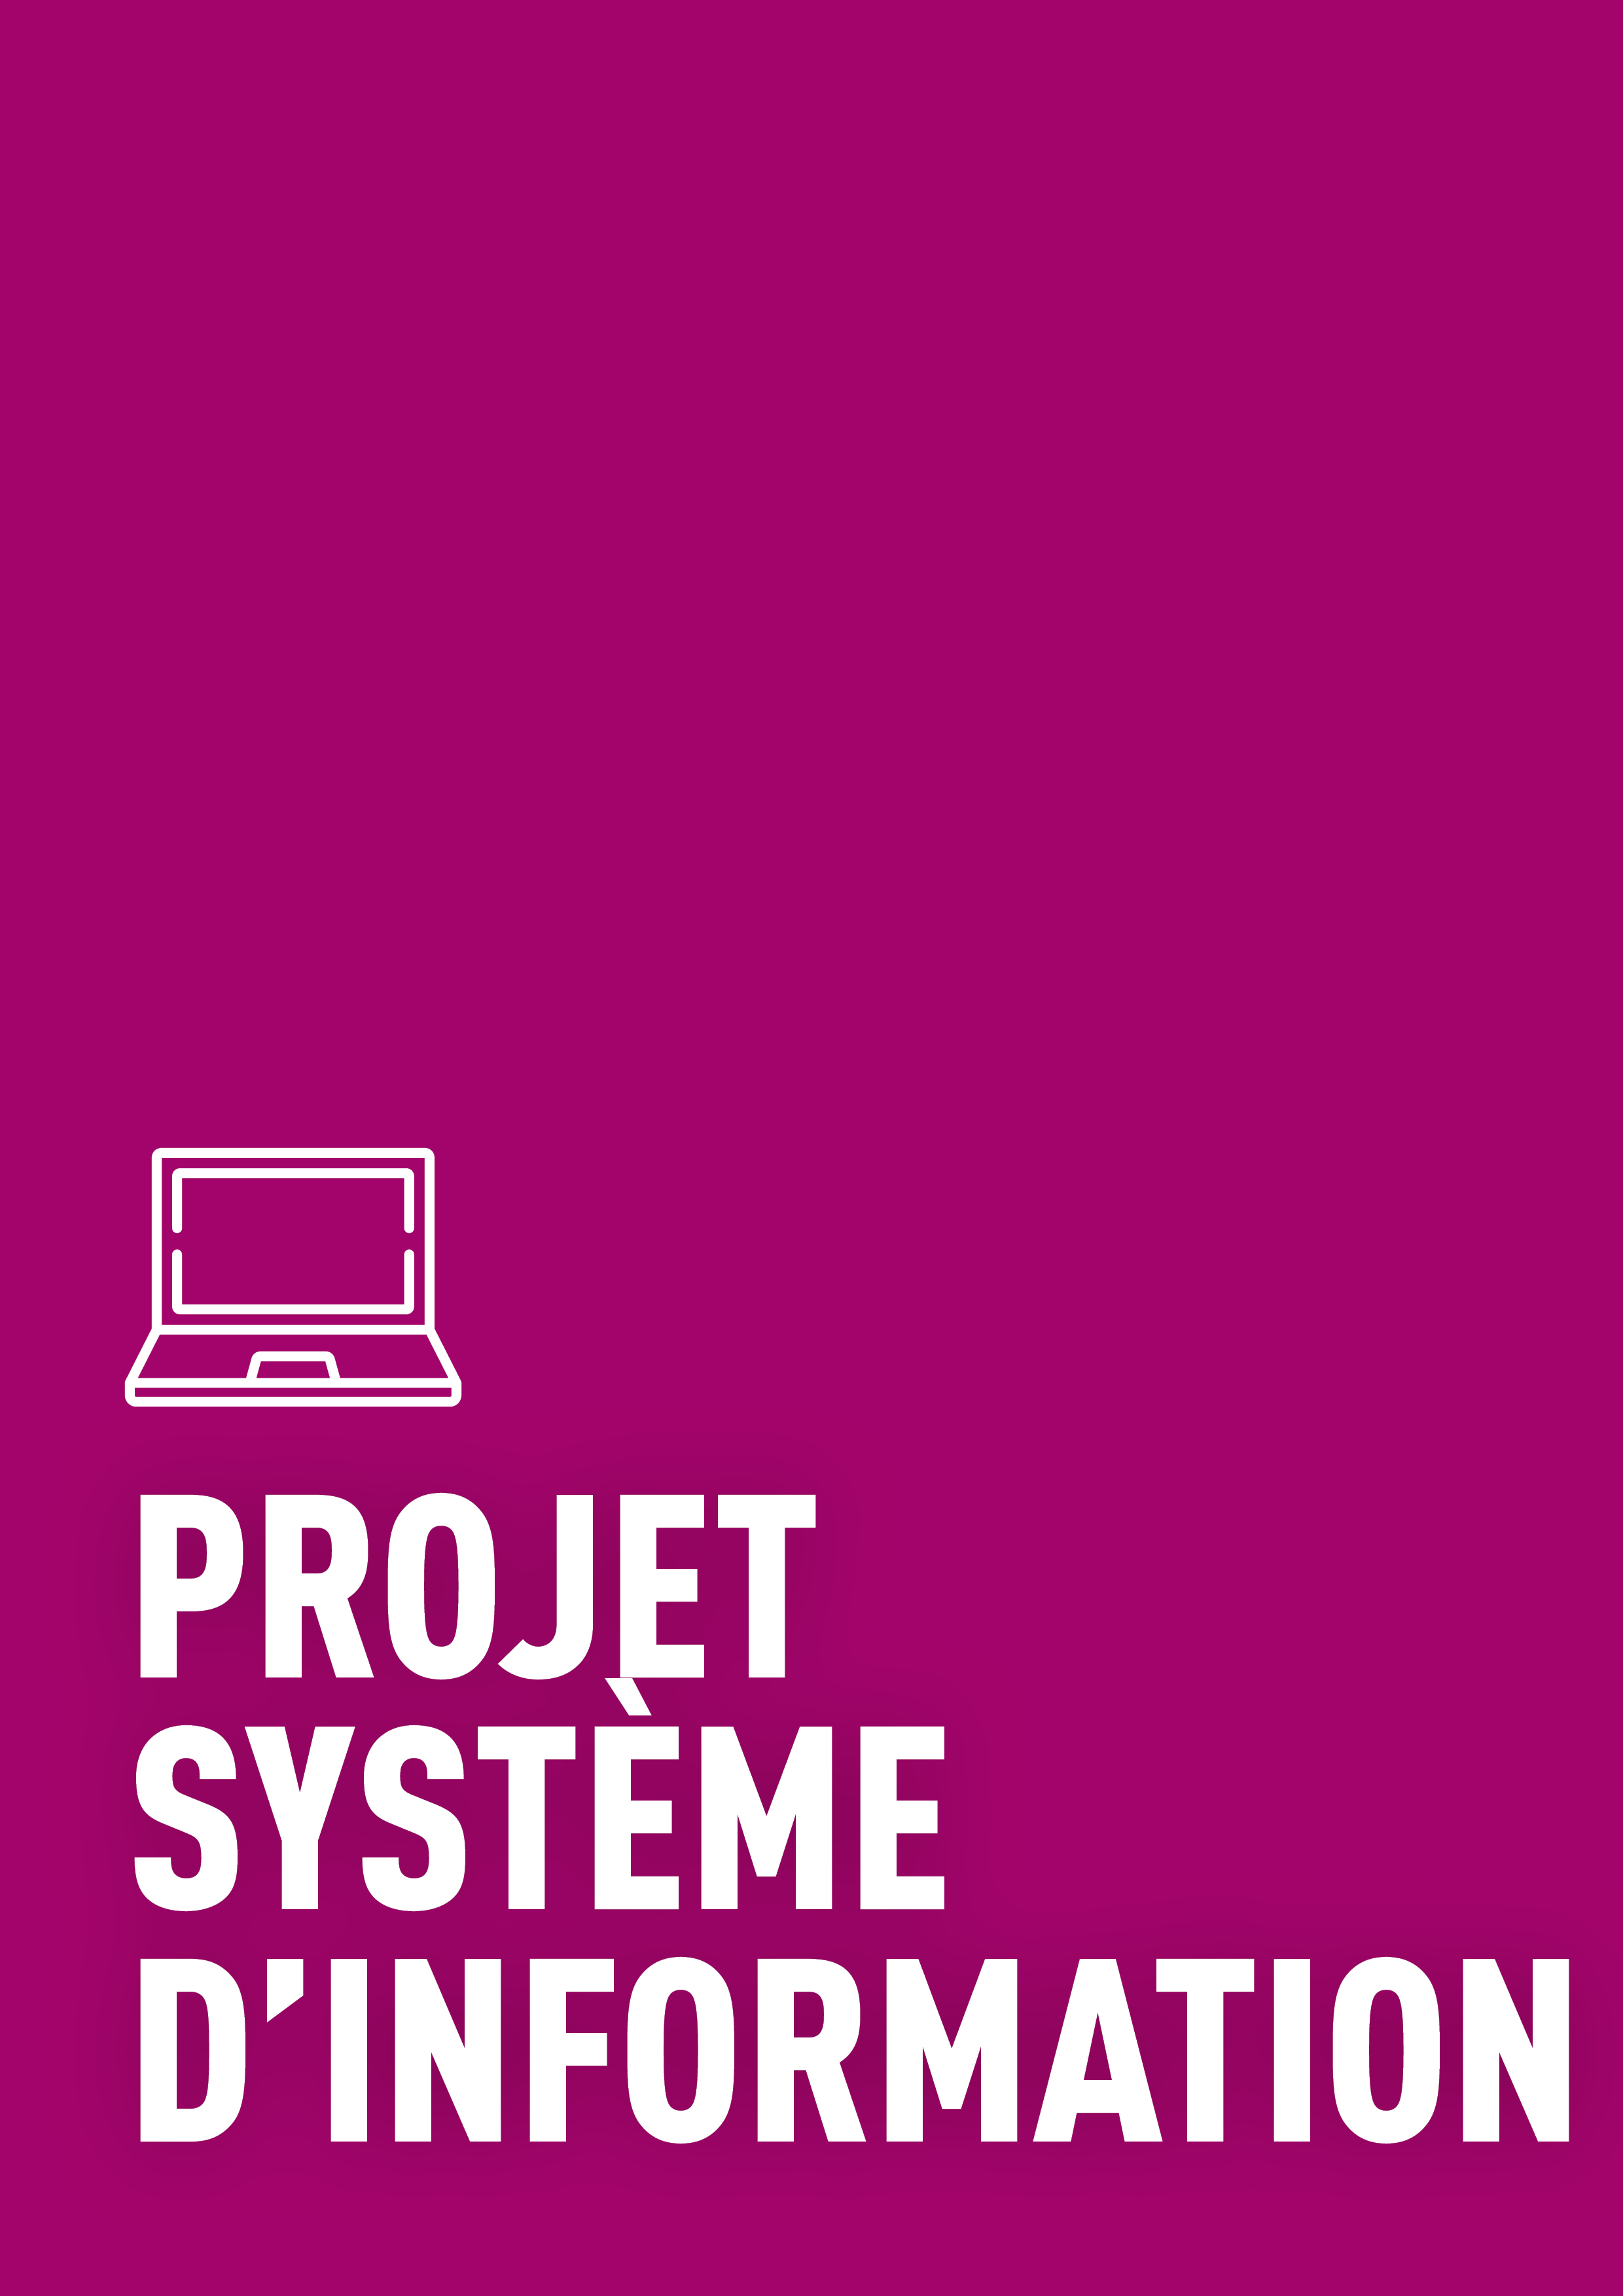 Le projet système d’information